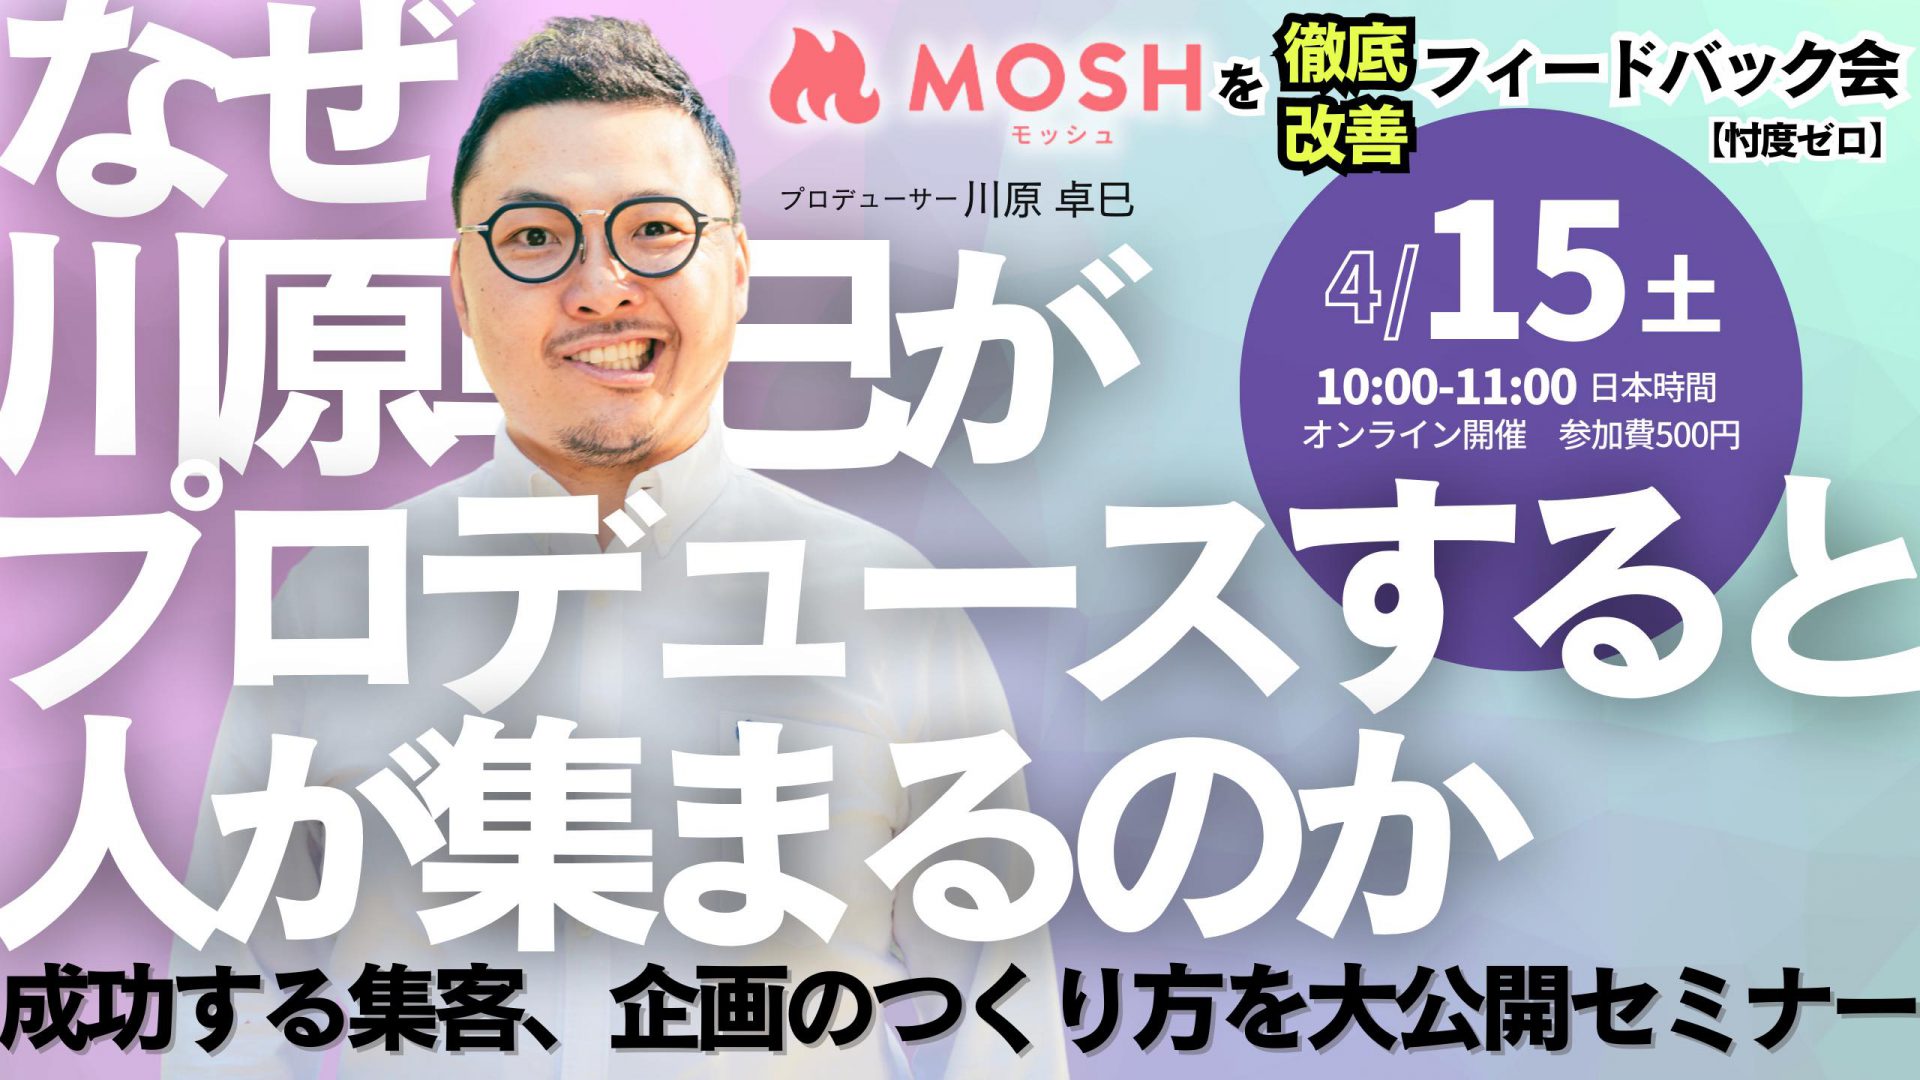 ネットでサービスが売れるMOSH、プロデューサー川原卓巳さんによる“MOSHフィードバック会”を開催へ。 | MOSH Magazine